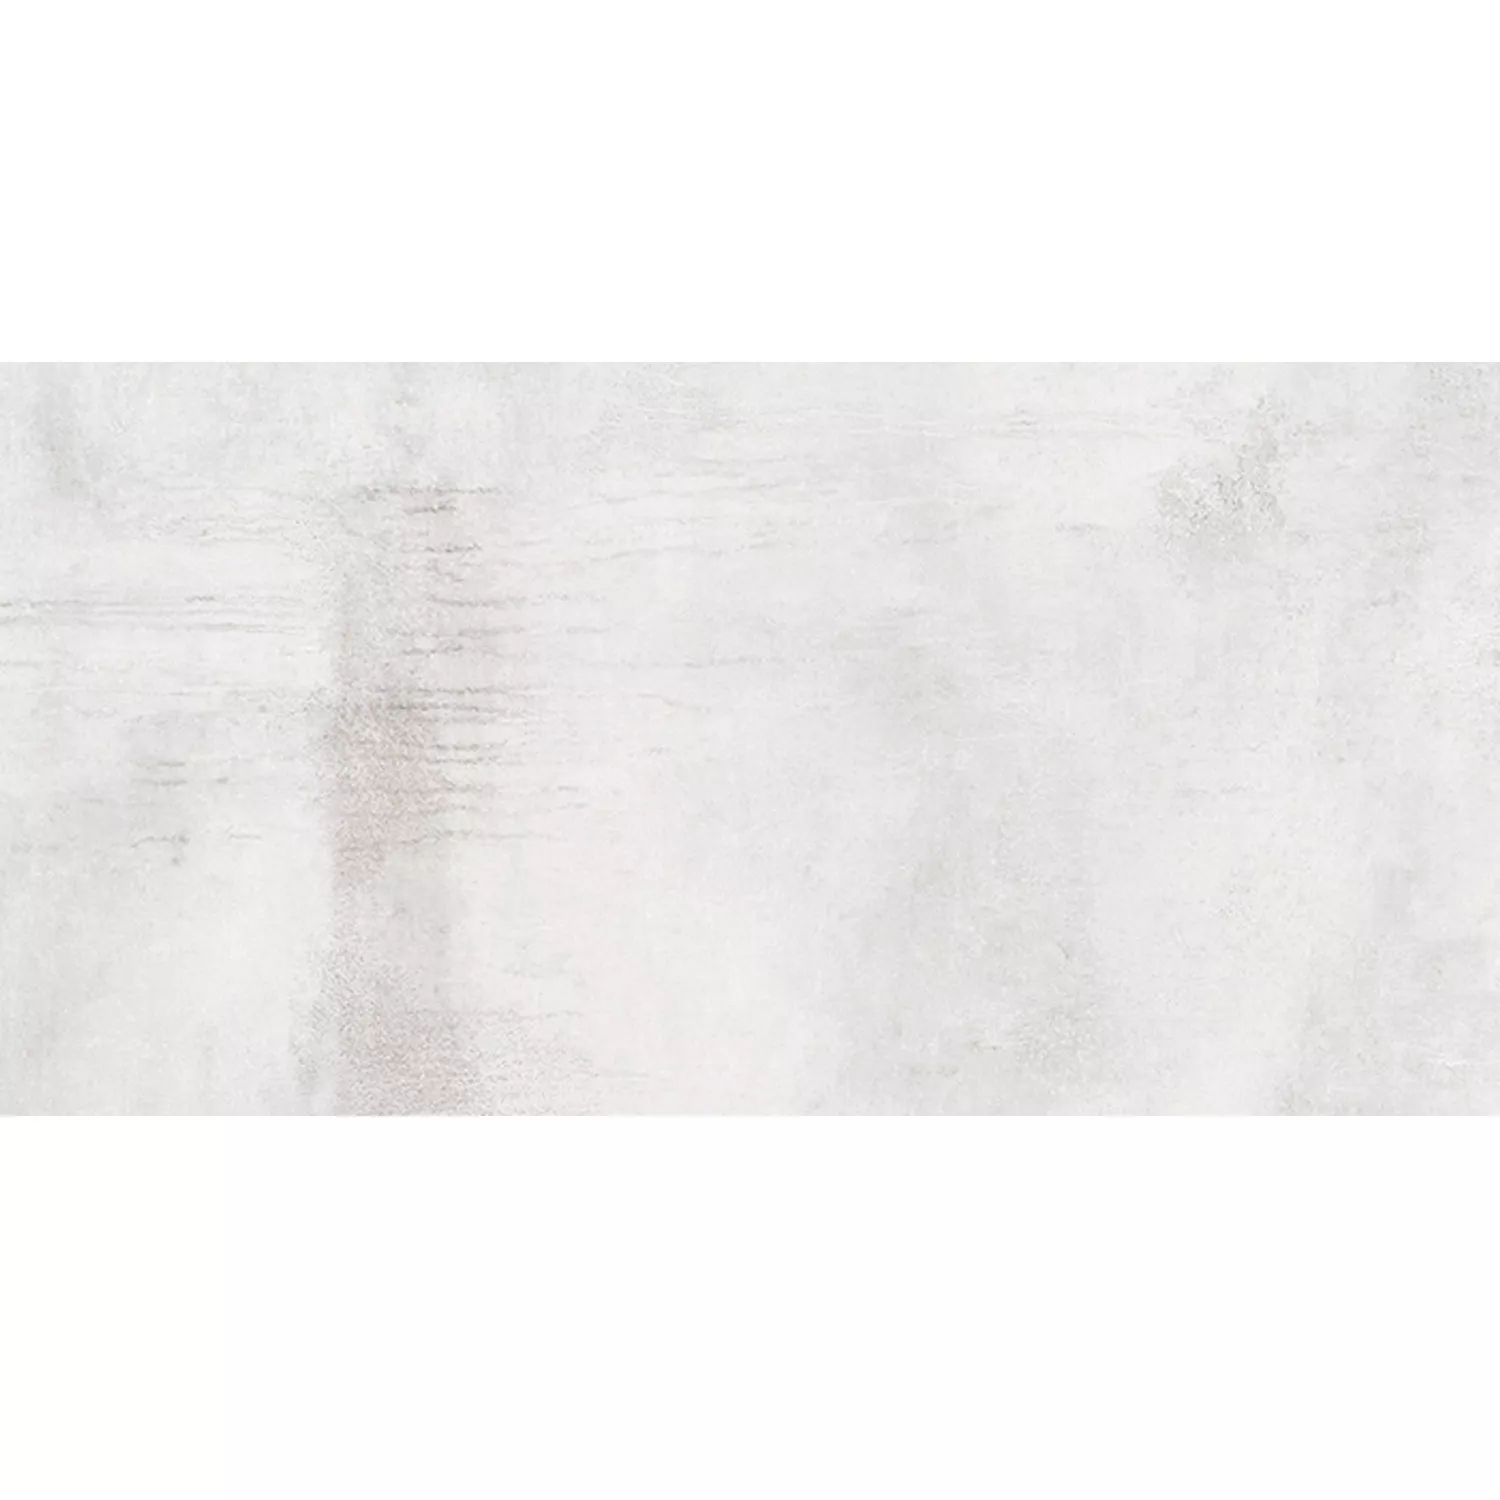 Πρότυπο Πλακάκια Δαπέδου Tycoon Συγκεκριμένη Εμφάνιση R10 Ασήμι 30x60cm